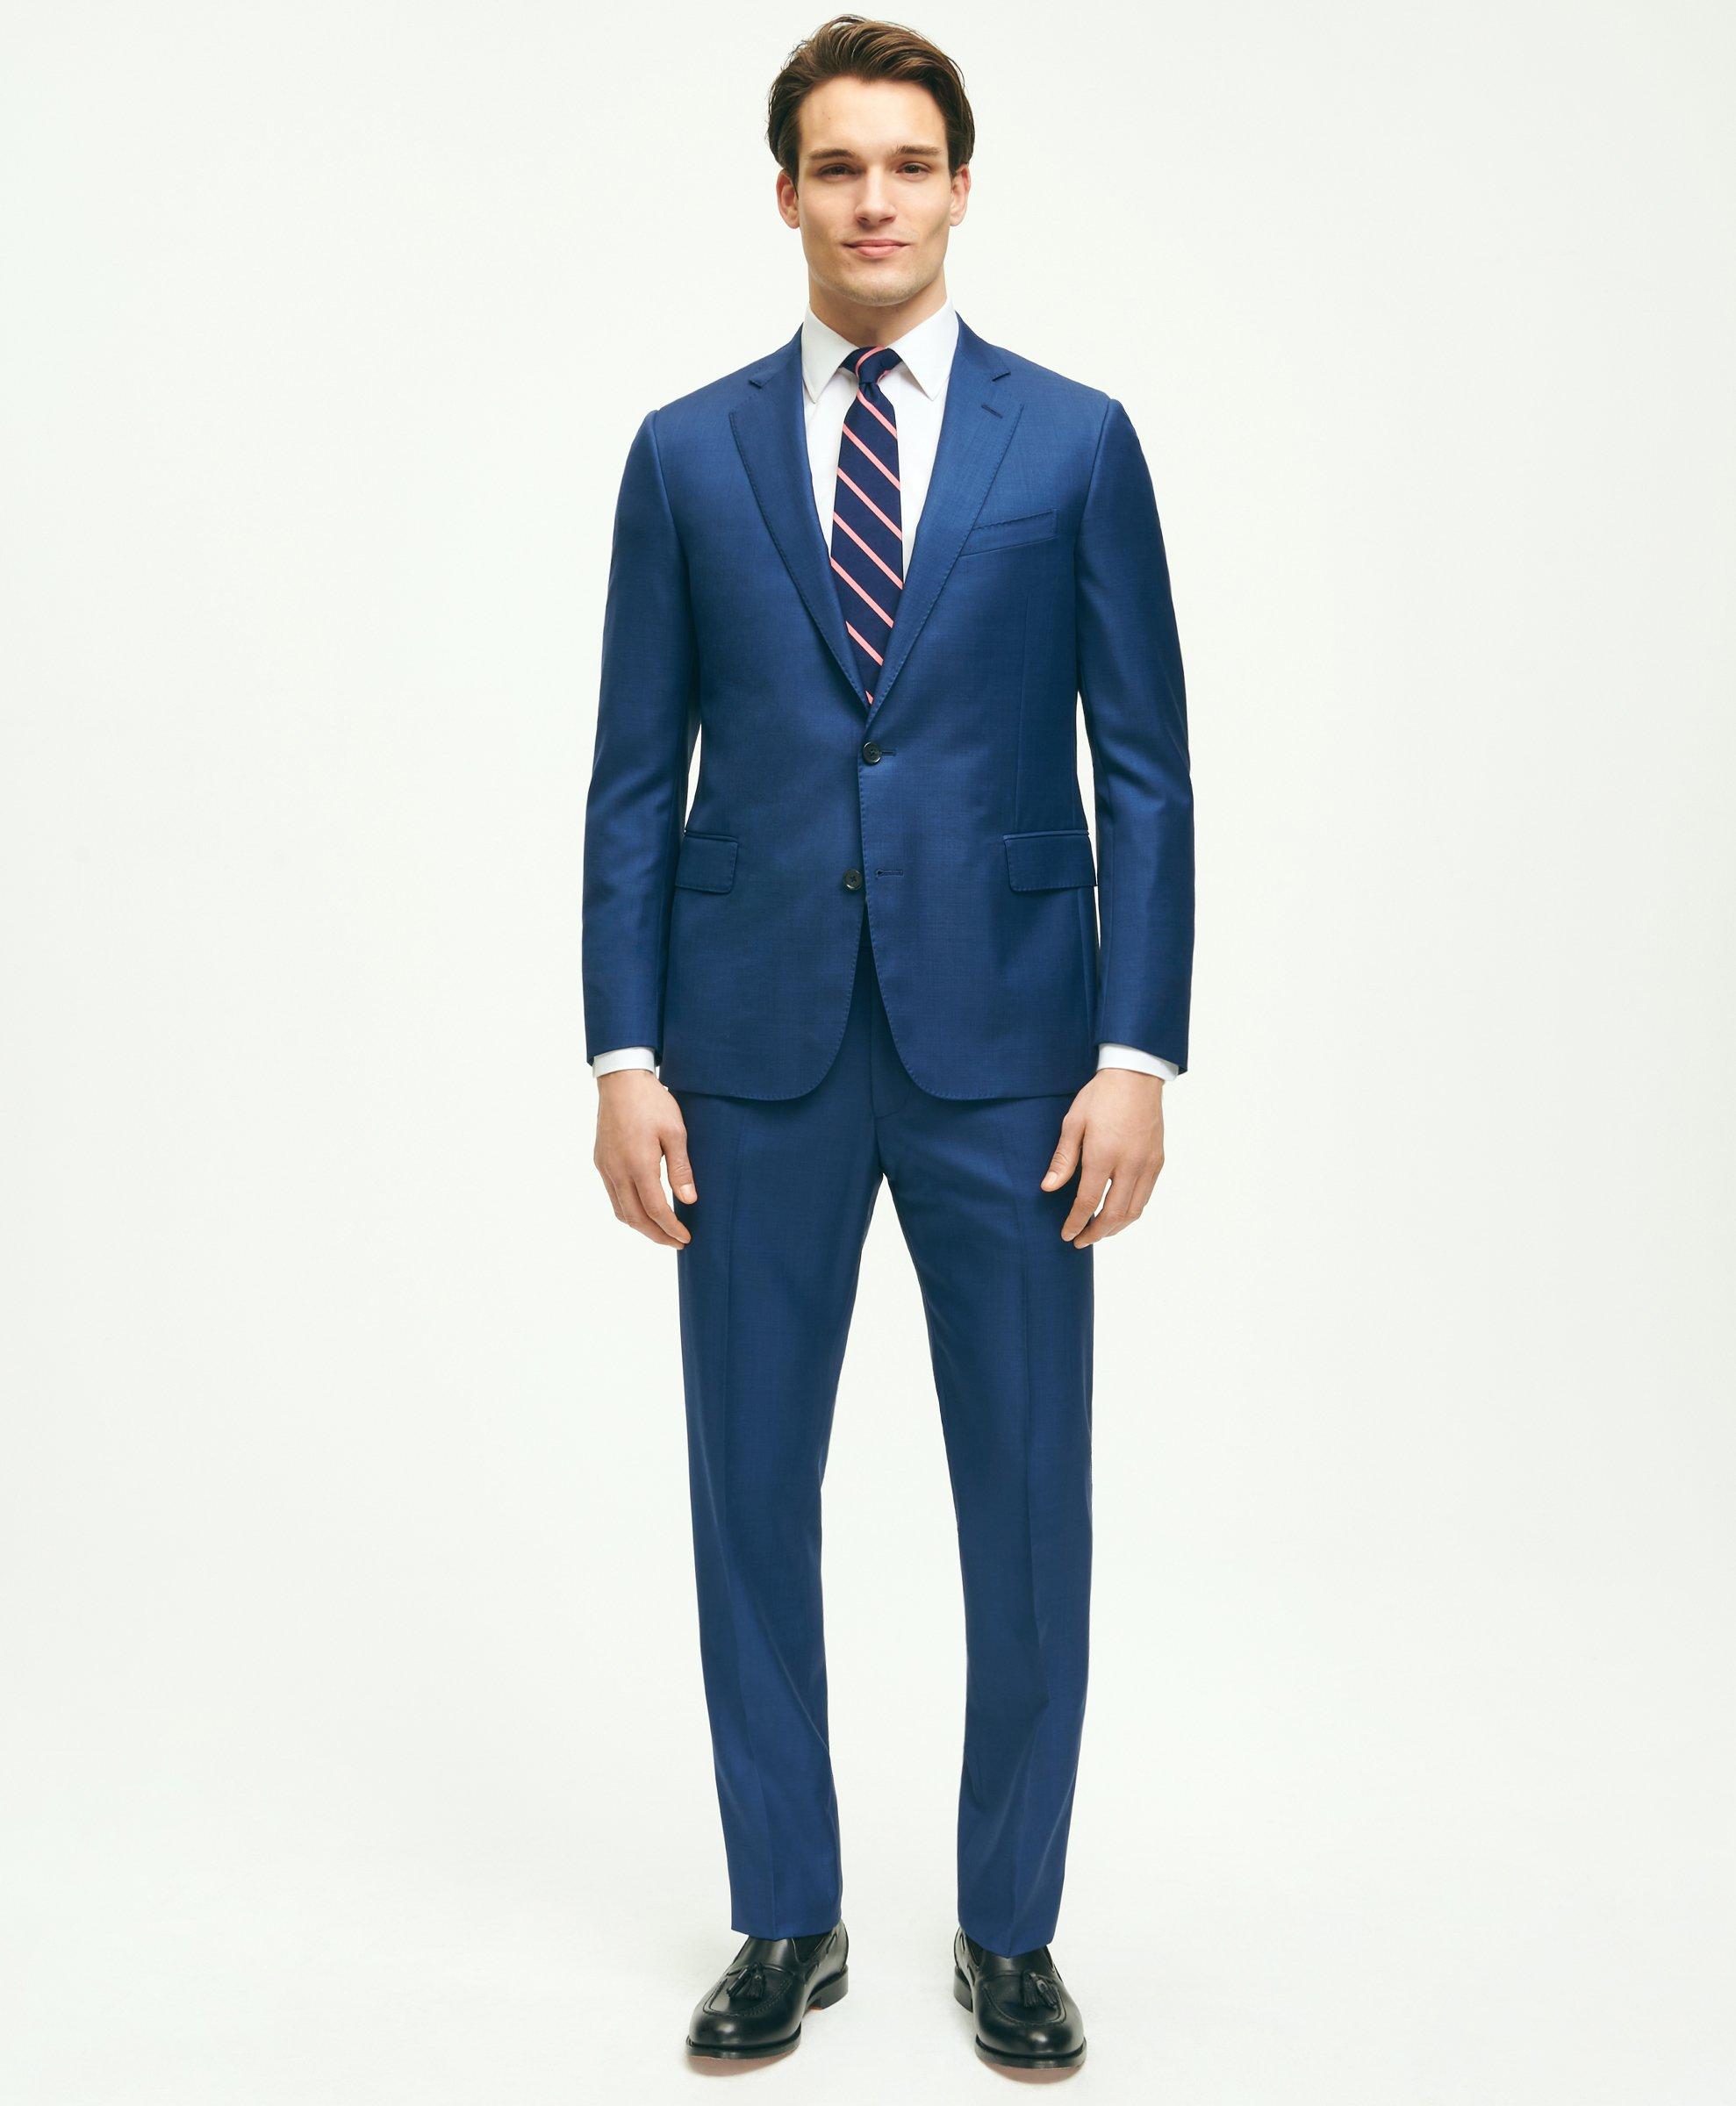 Shop Men's Suits & Suit Separates, Designer Suits